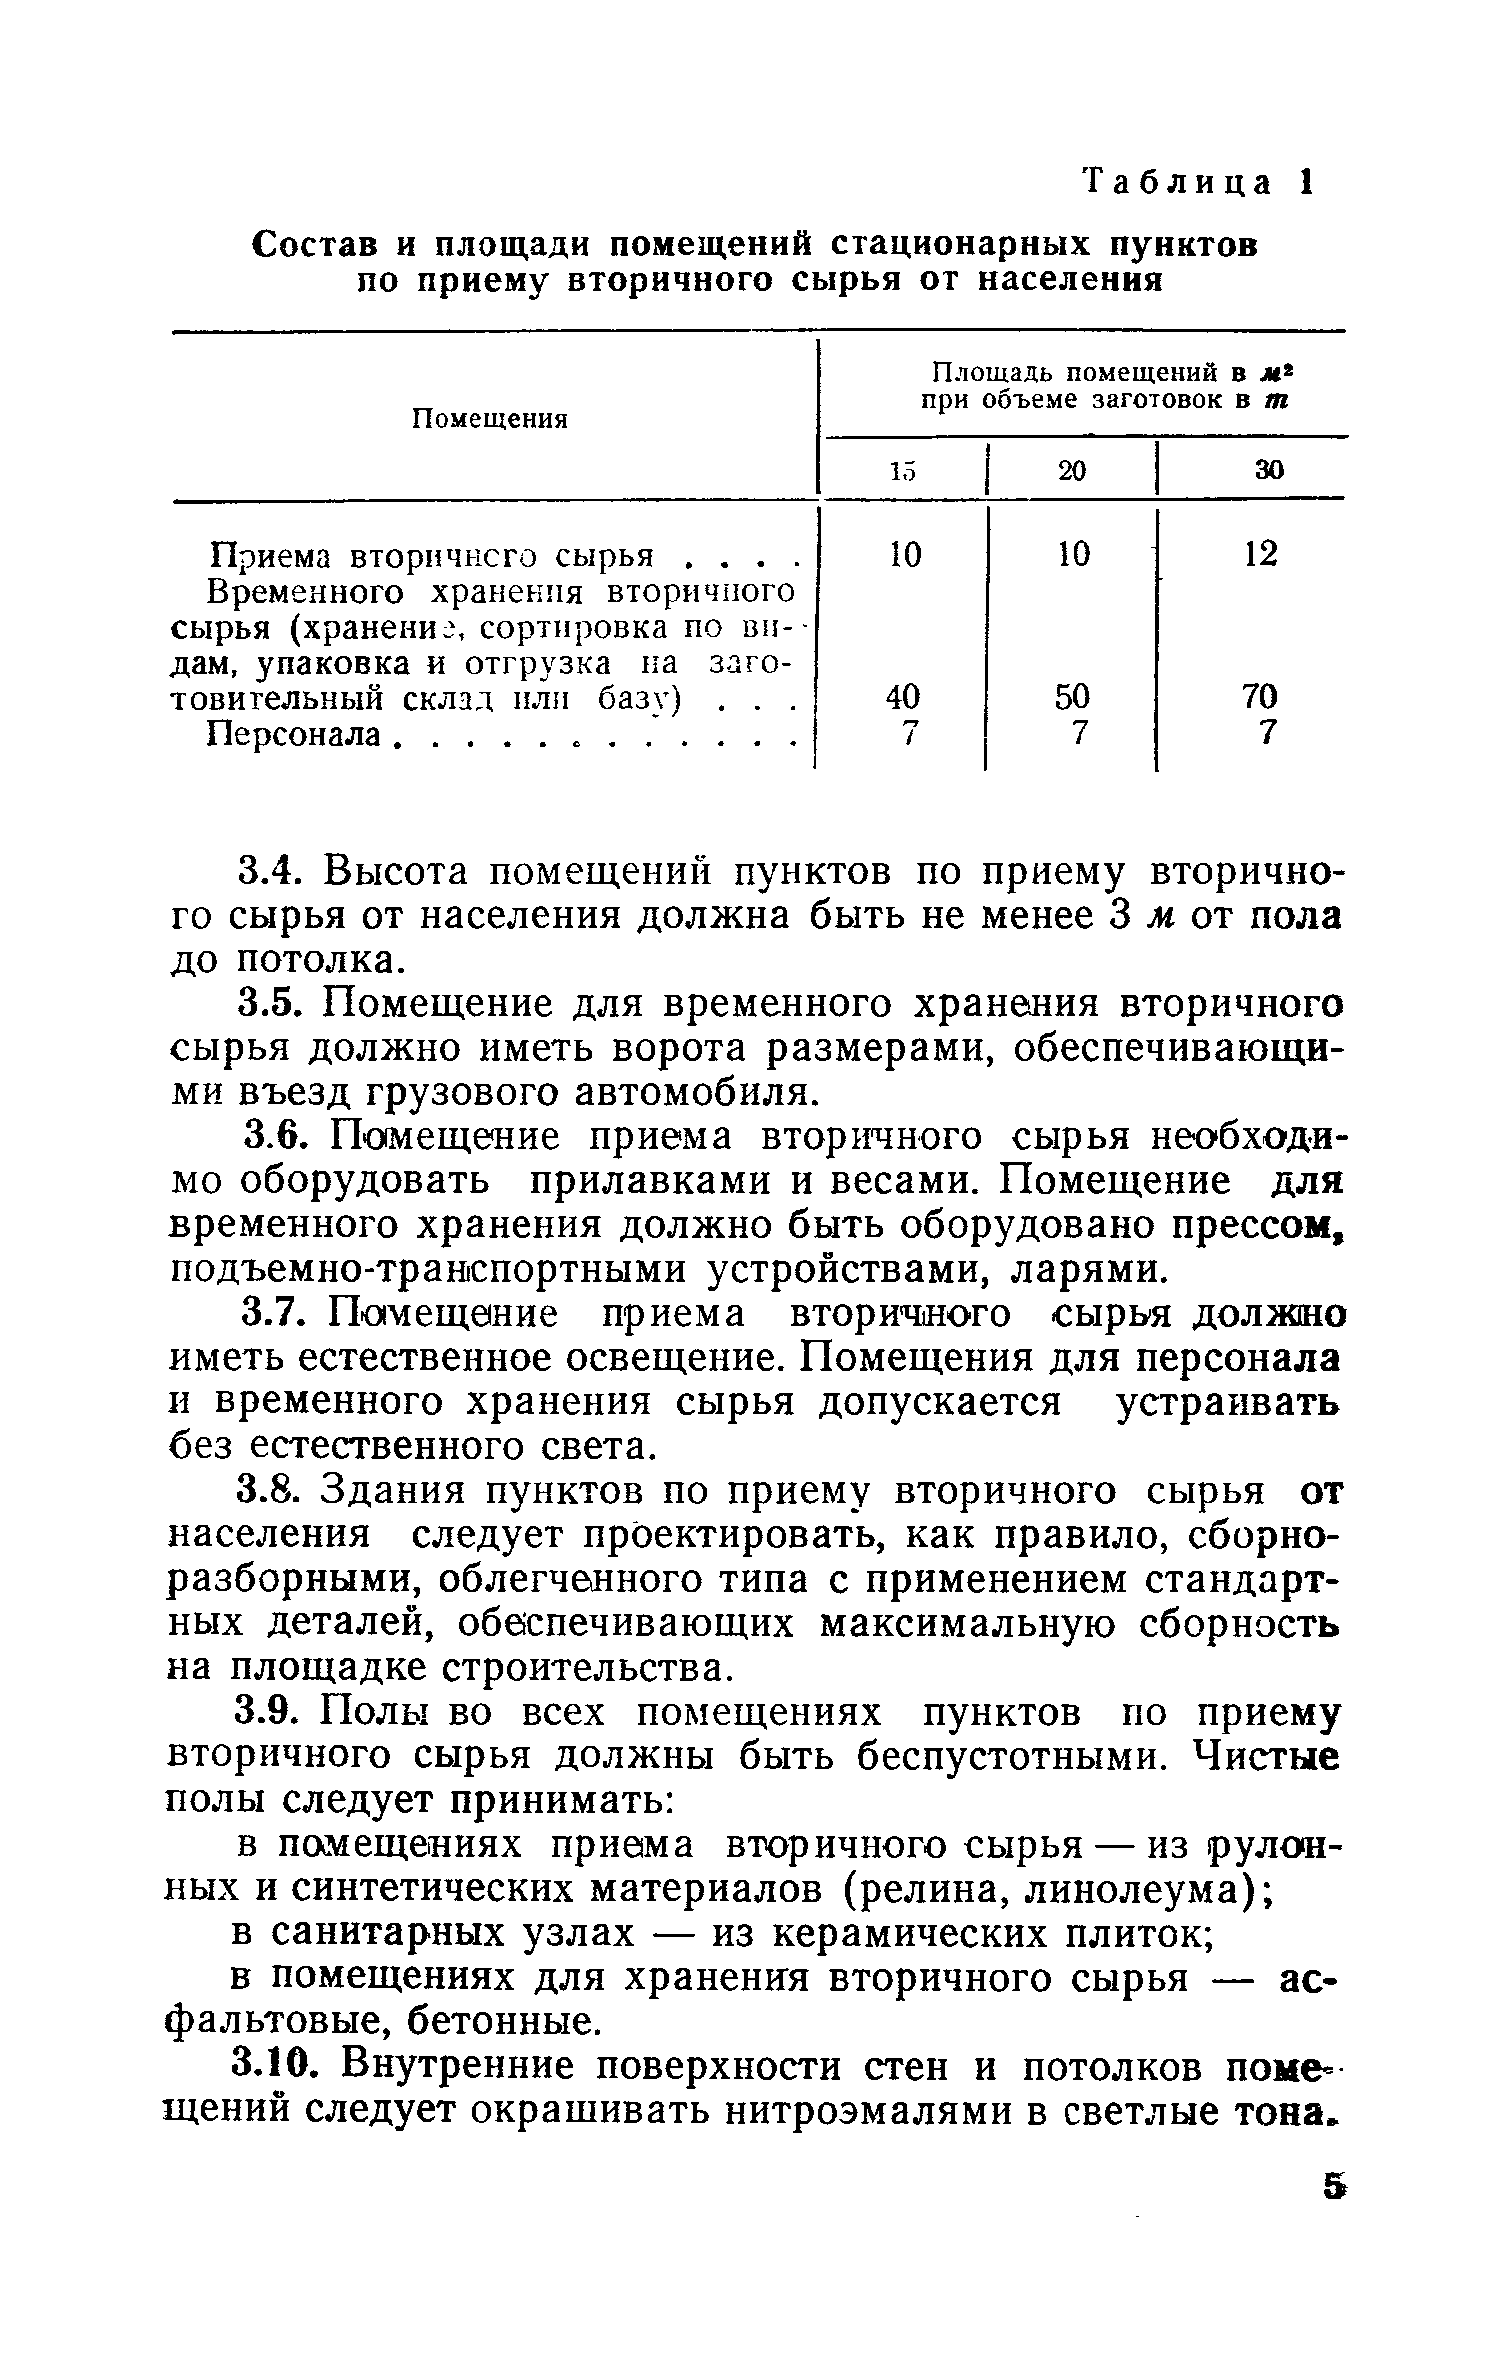 ВСН 7-71/Госгражданстрой